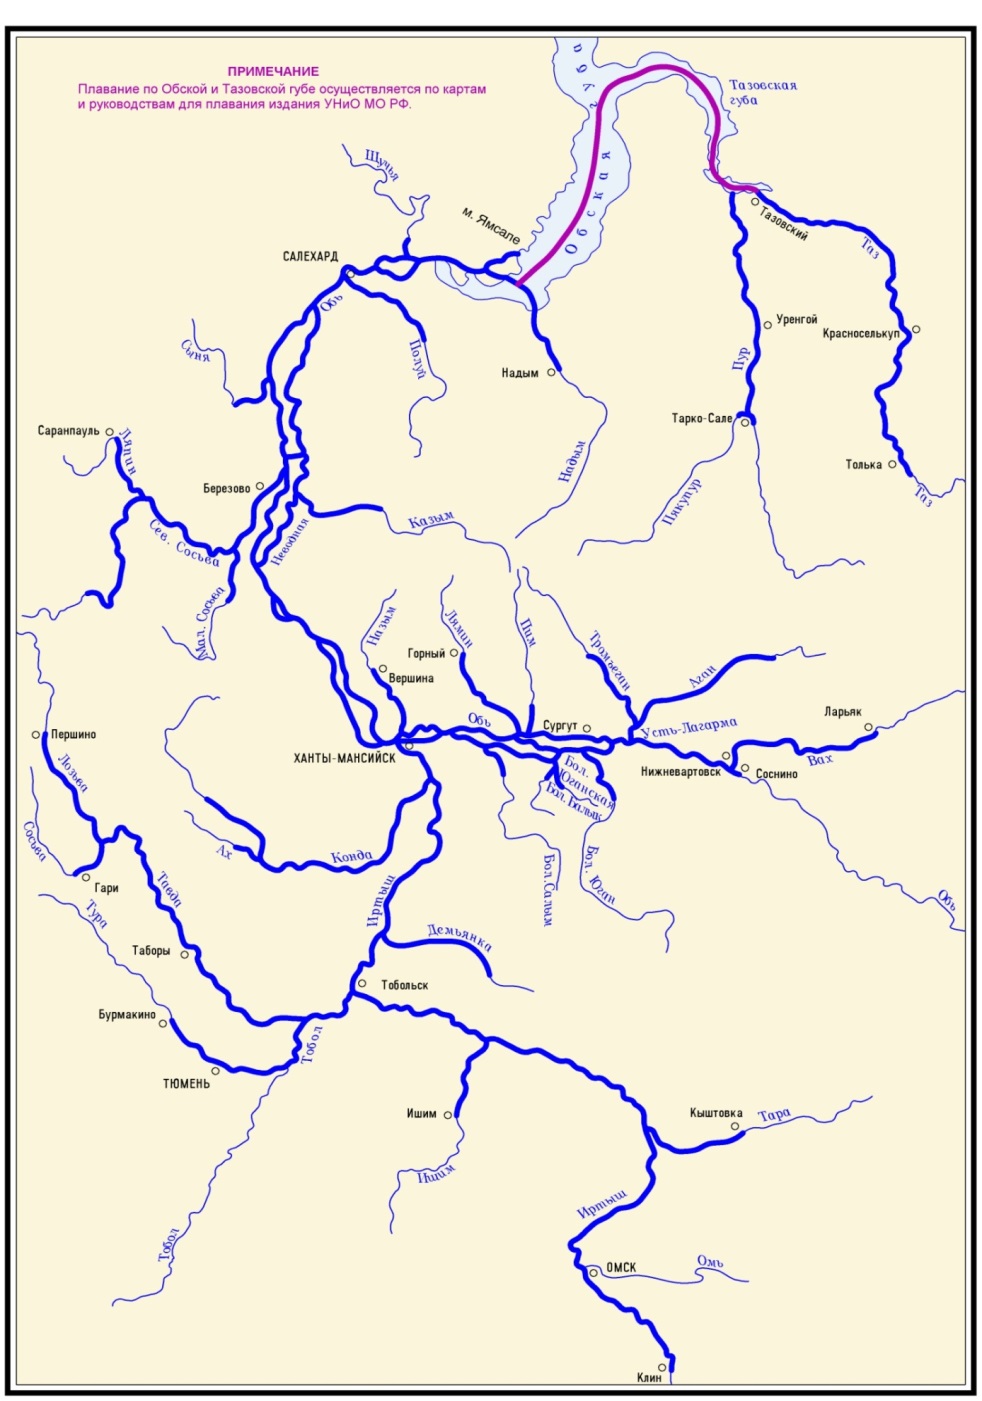 Подпишите на карте реку иртыш. Бассейн реки Обь. Исток и Устье реки Обь на карте. Бассейн реки Обь на карте. Схема реки Енисей.